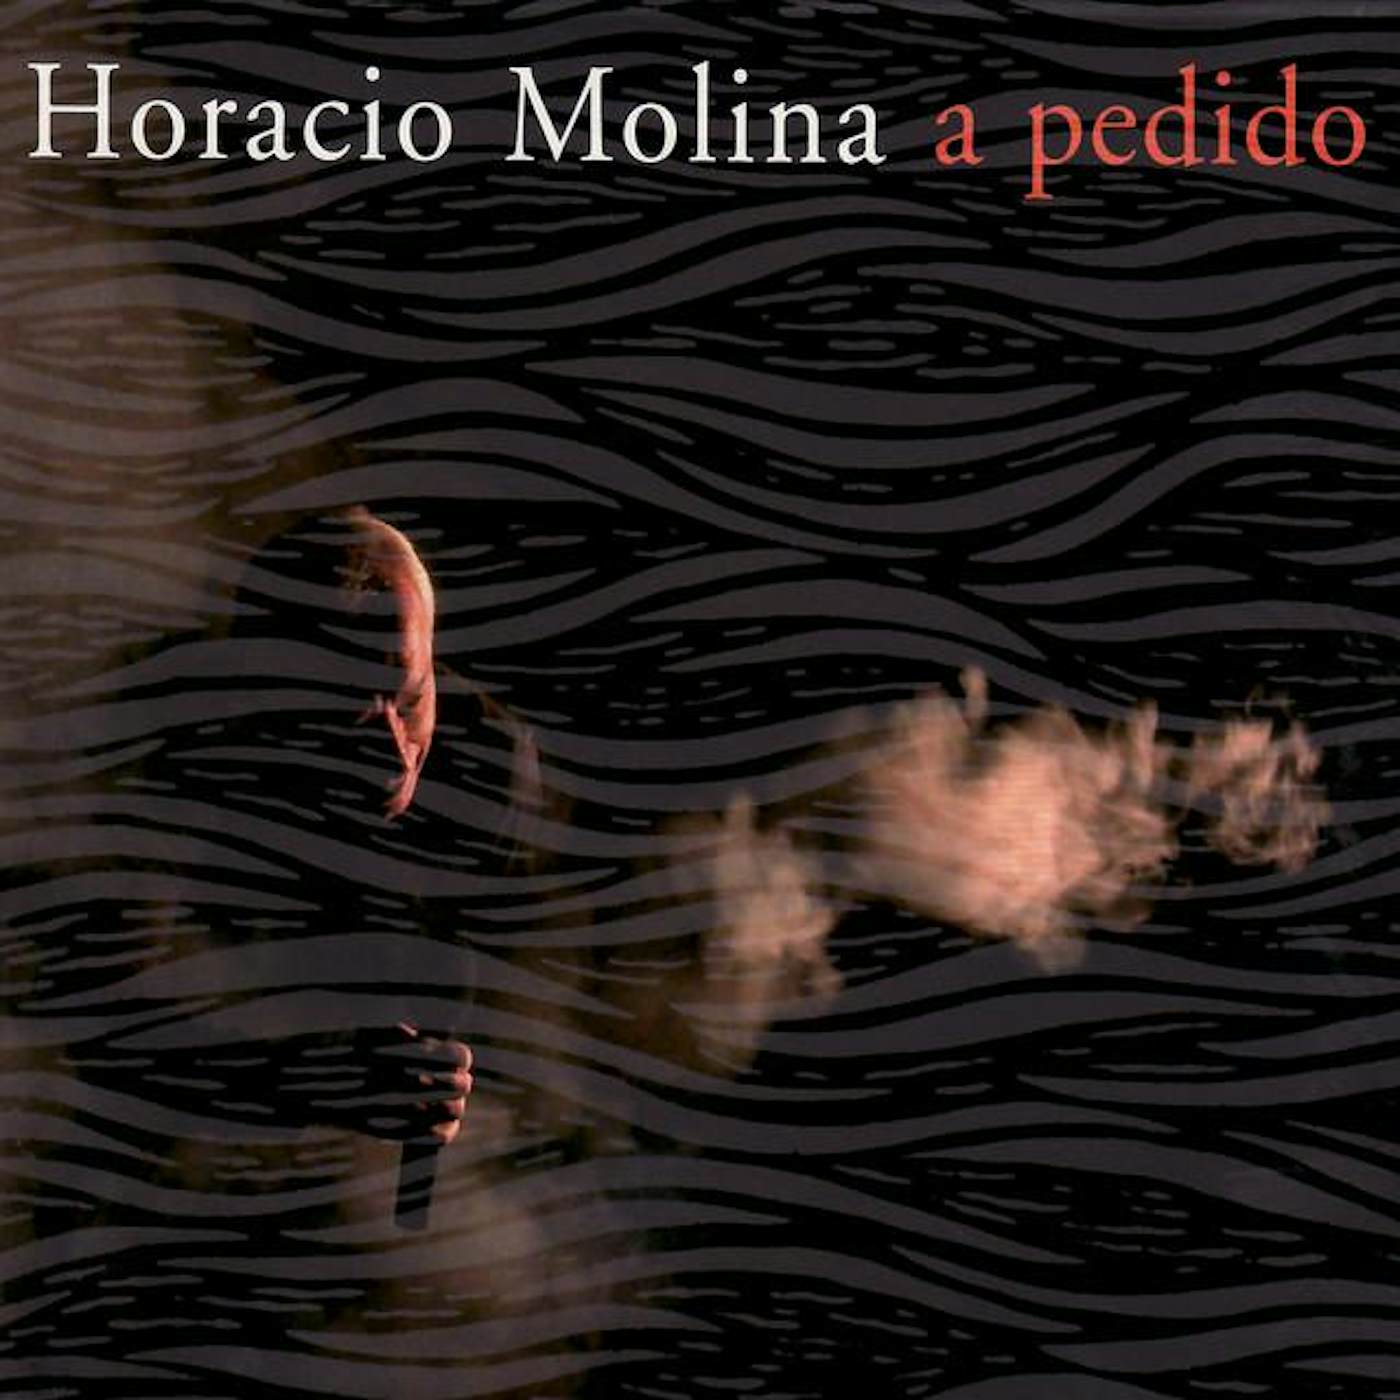 Horacio Molina